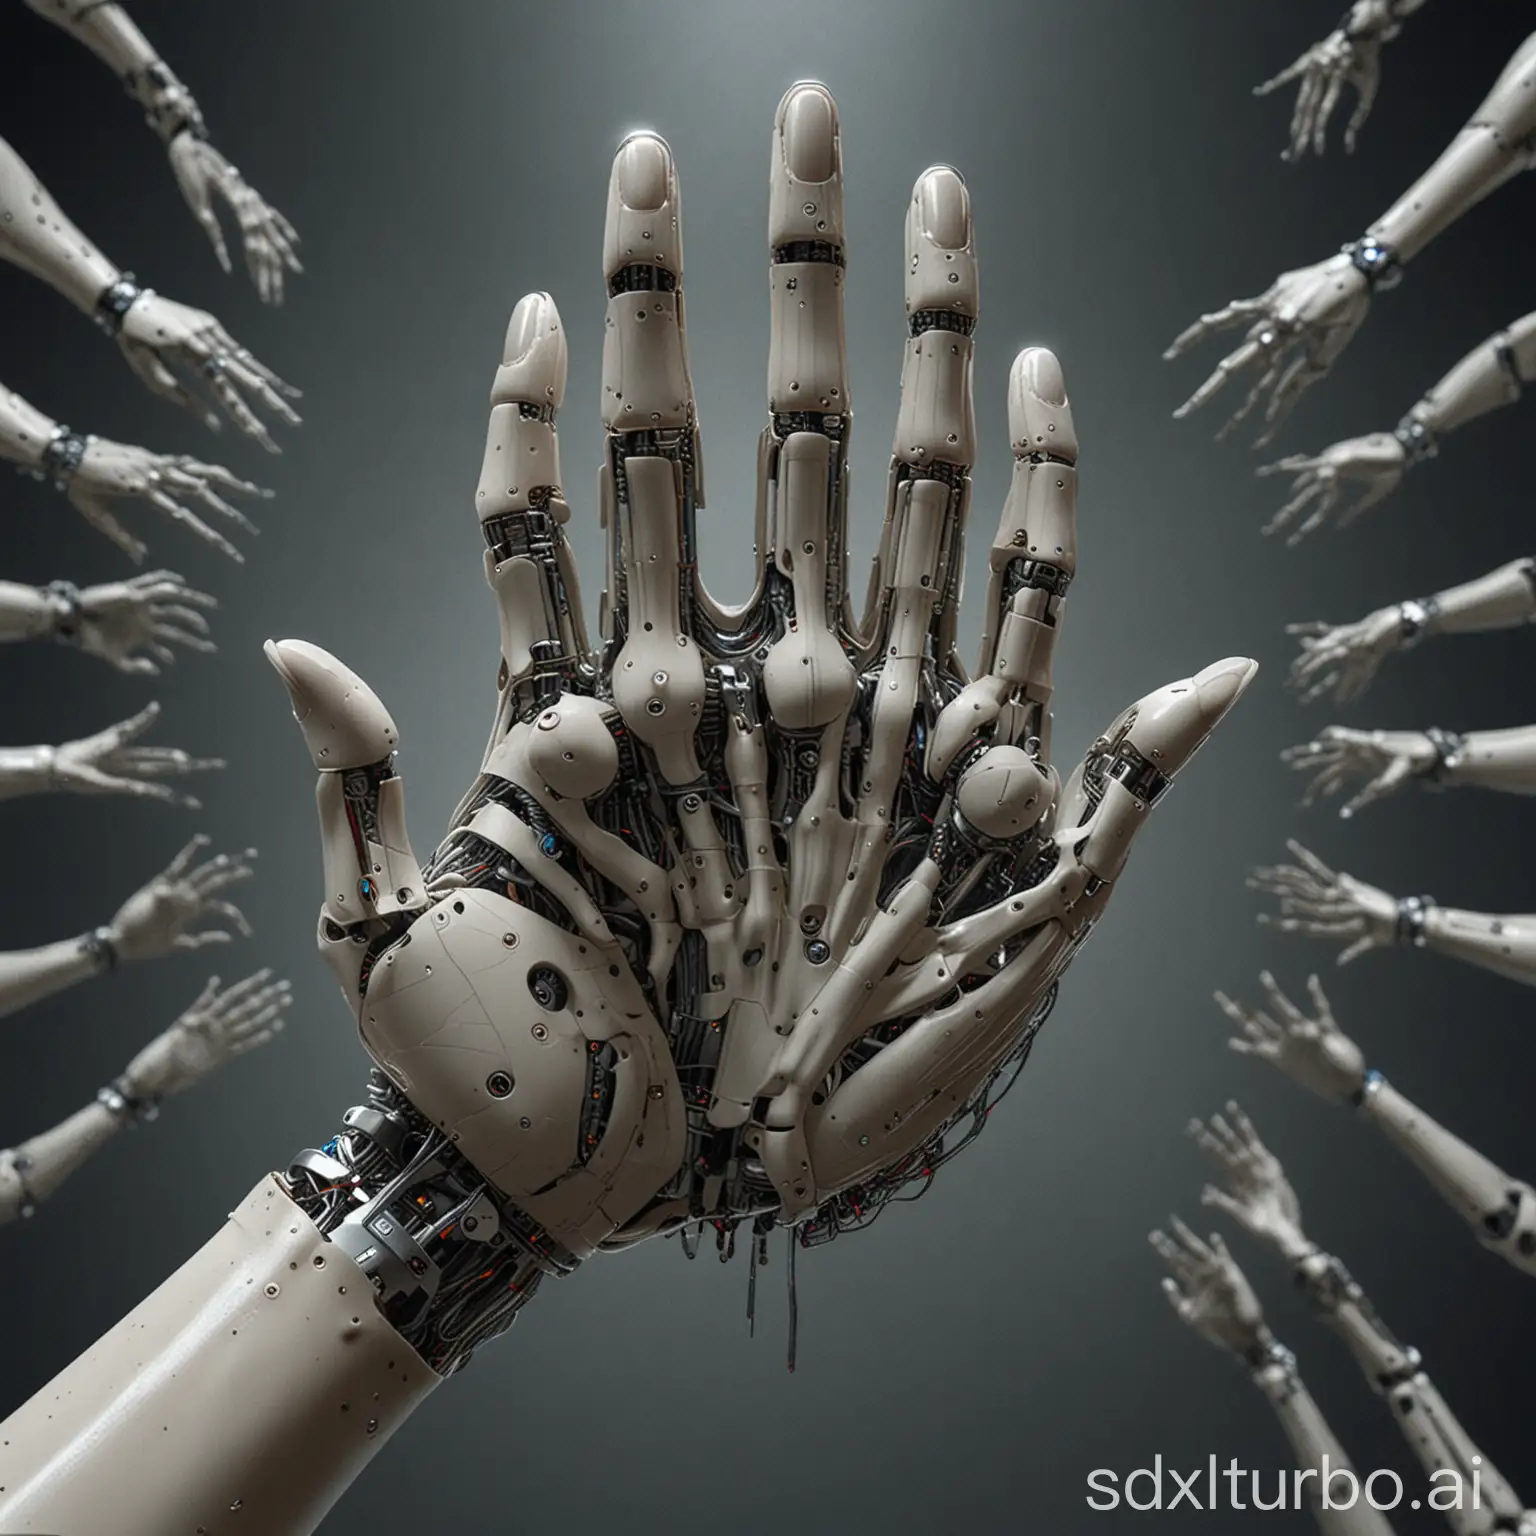 Futuristic-AI-with-Multitudinous-Arms-Eerie-SciFi-Concept